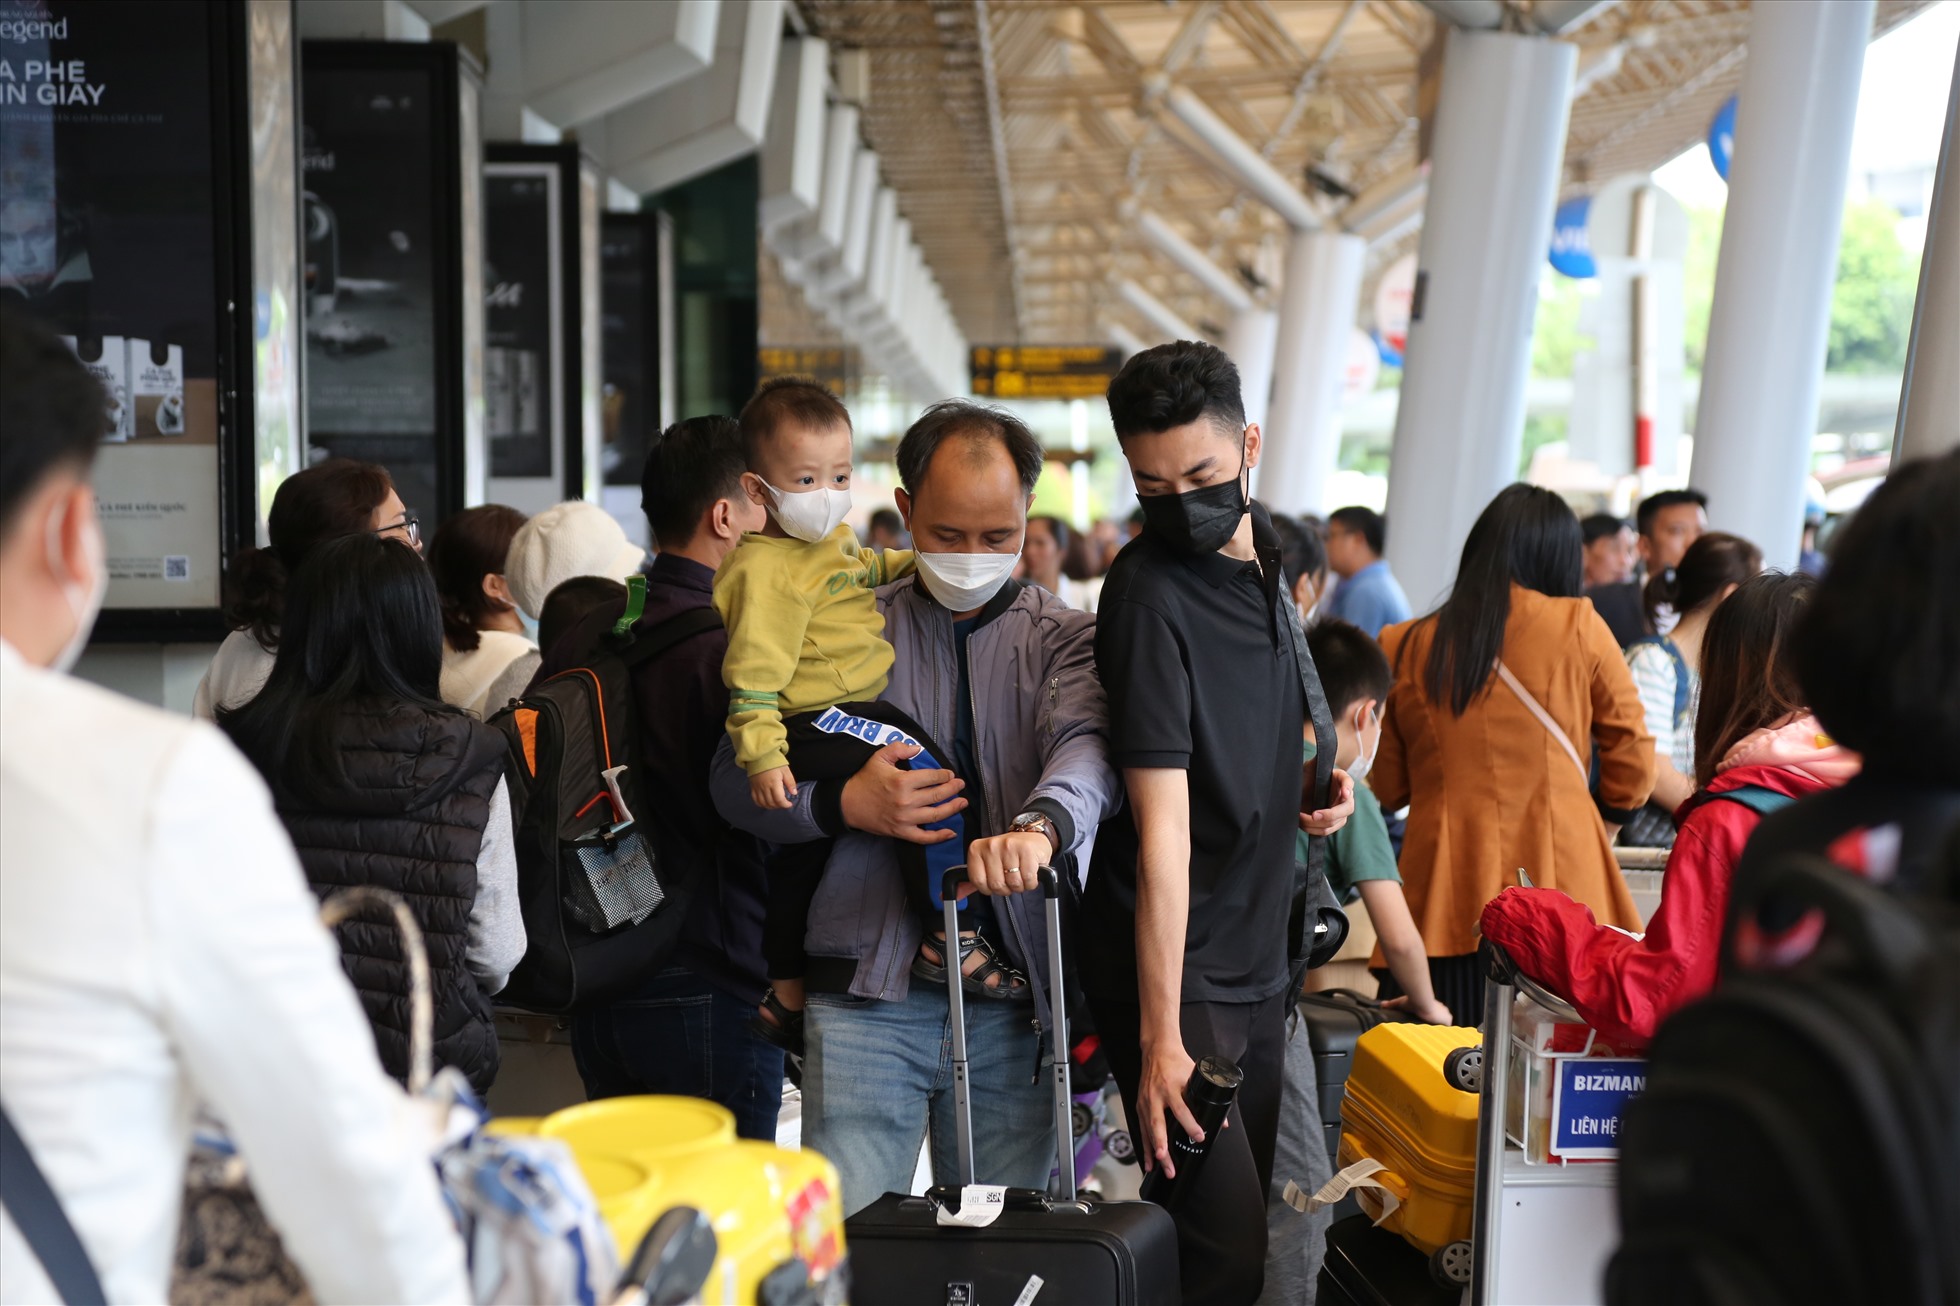 Hài lòng về trải nghiệm tại sân bay Tân Sơn Nhất trong ngày cao điểm nghỉ lễ, nhiều hành khách cho biết họ mong muốn sân bay sẽ duy trì được chất lượng phục vụ này trong các thời gian cao điểm khác và mong rằng có thể rút gọn hơn nữa thời gian chờ đón xe.